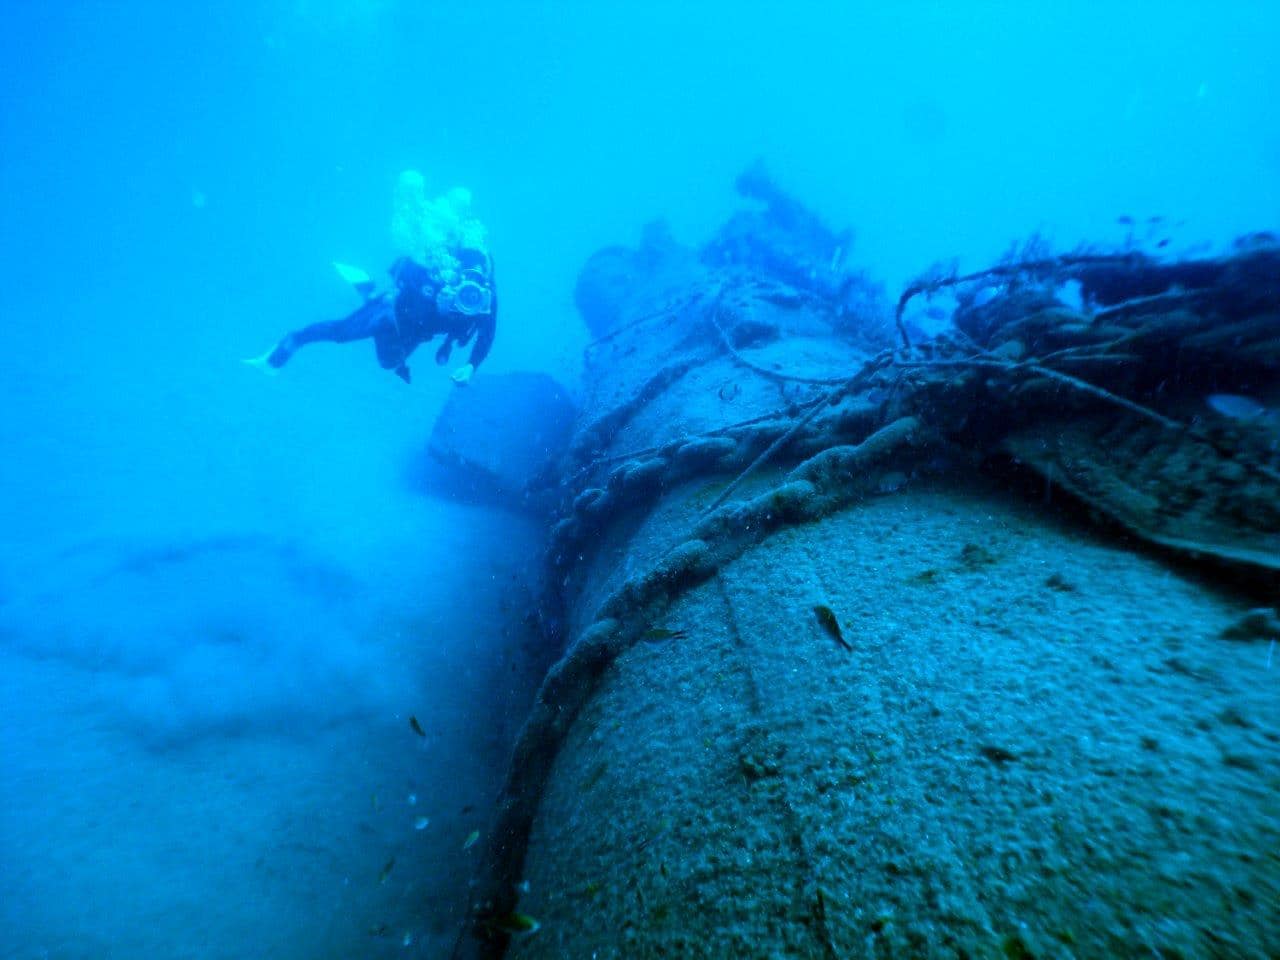 הצוללת שירה שרשרת עוגן של ספינת הצי האמריקאי שגרמה נזק צילום אהוד גלילי 2016